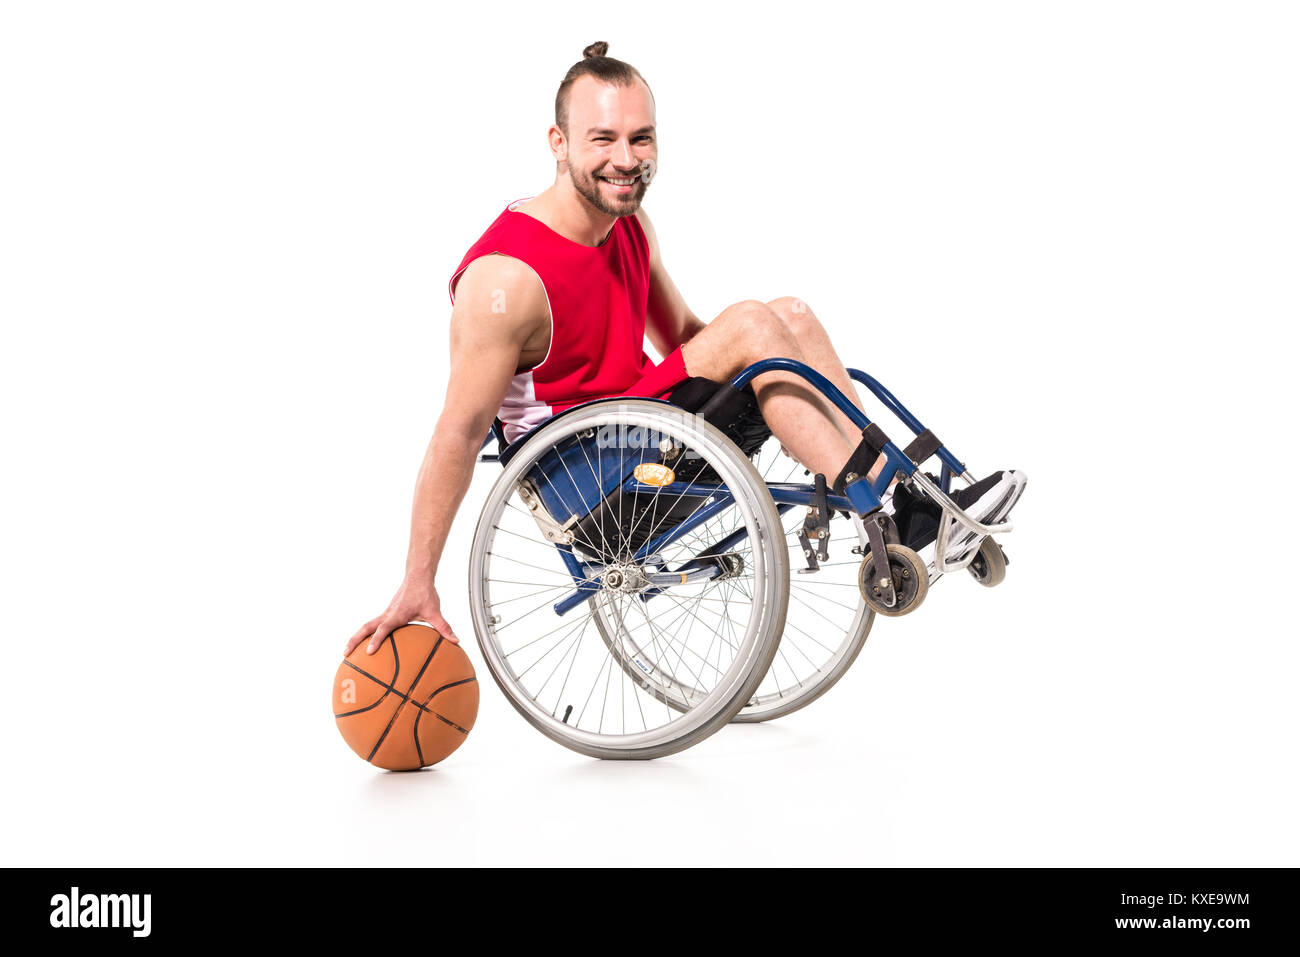 En jouant au basket-ball en fauteuil roulant sportif Banque D'Images